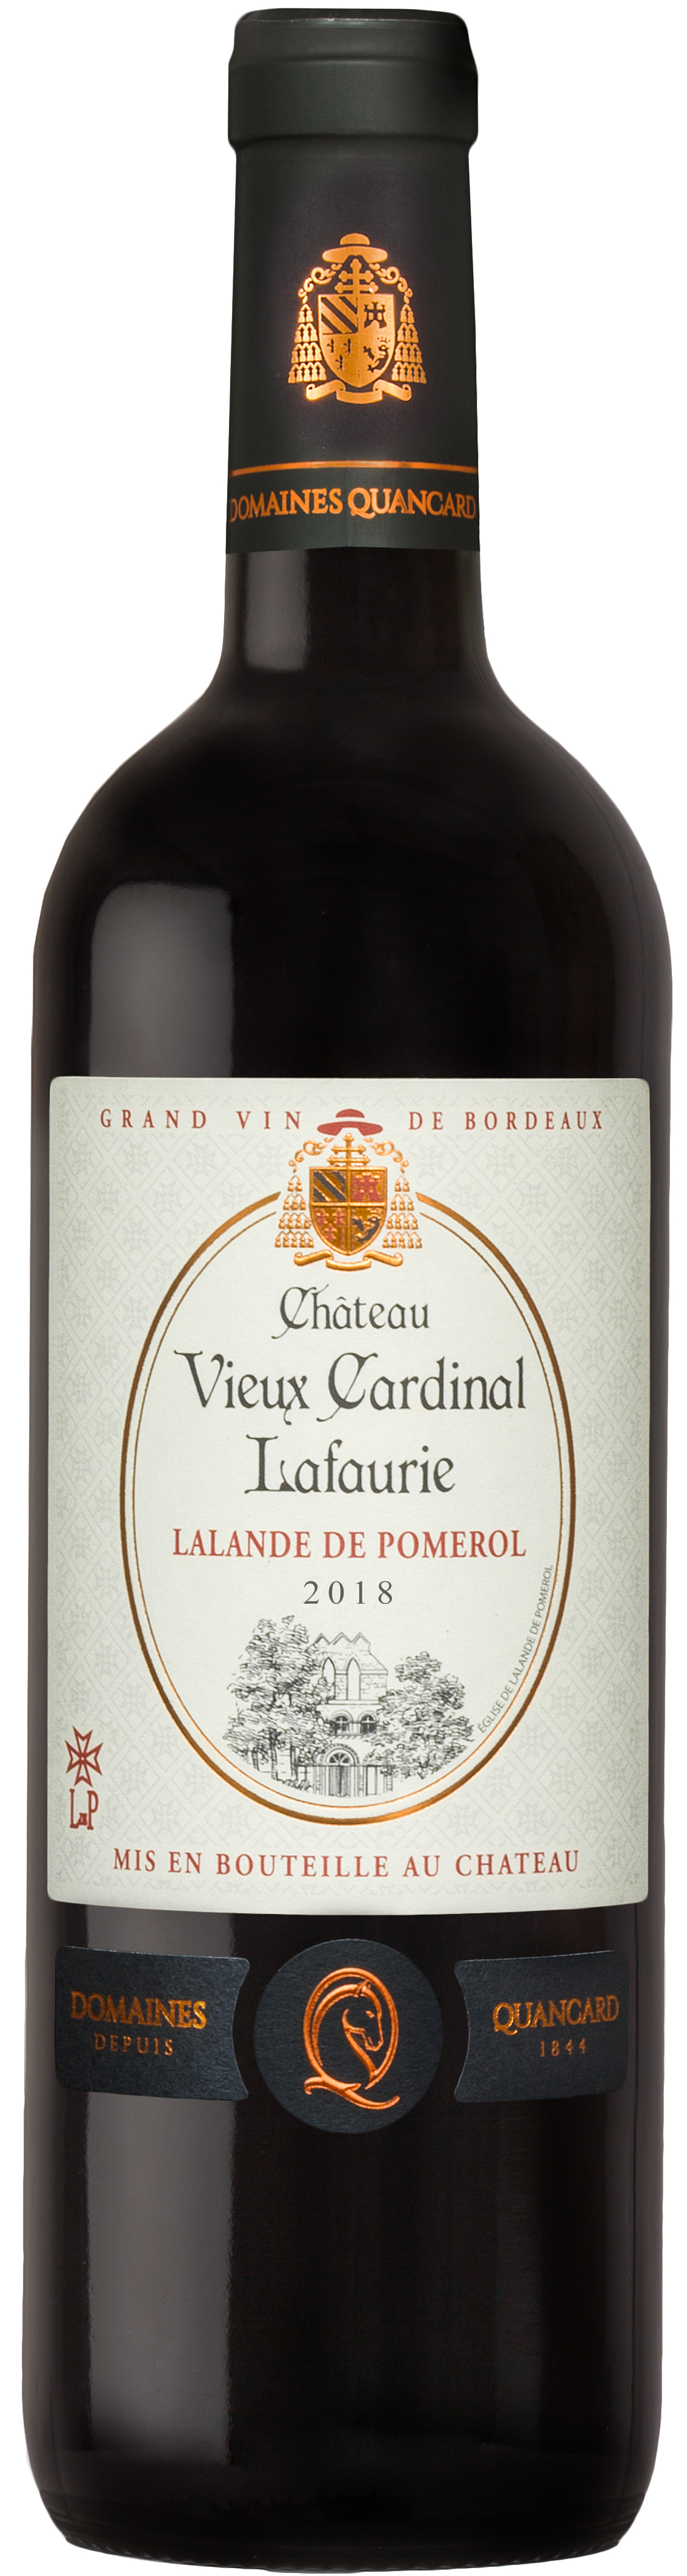 Château Vieux Cardinal Lafaurie Lalande de Pomerol Cheval Quancard